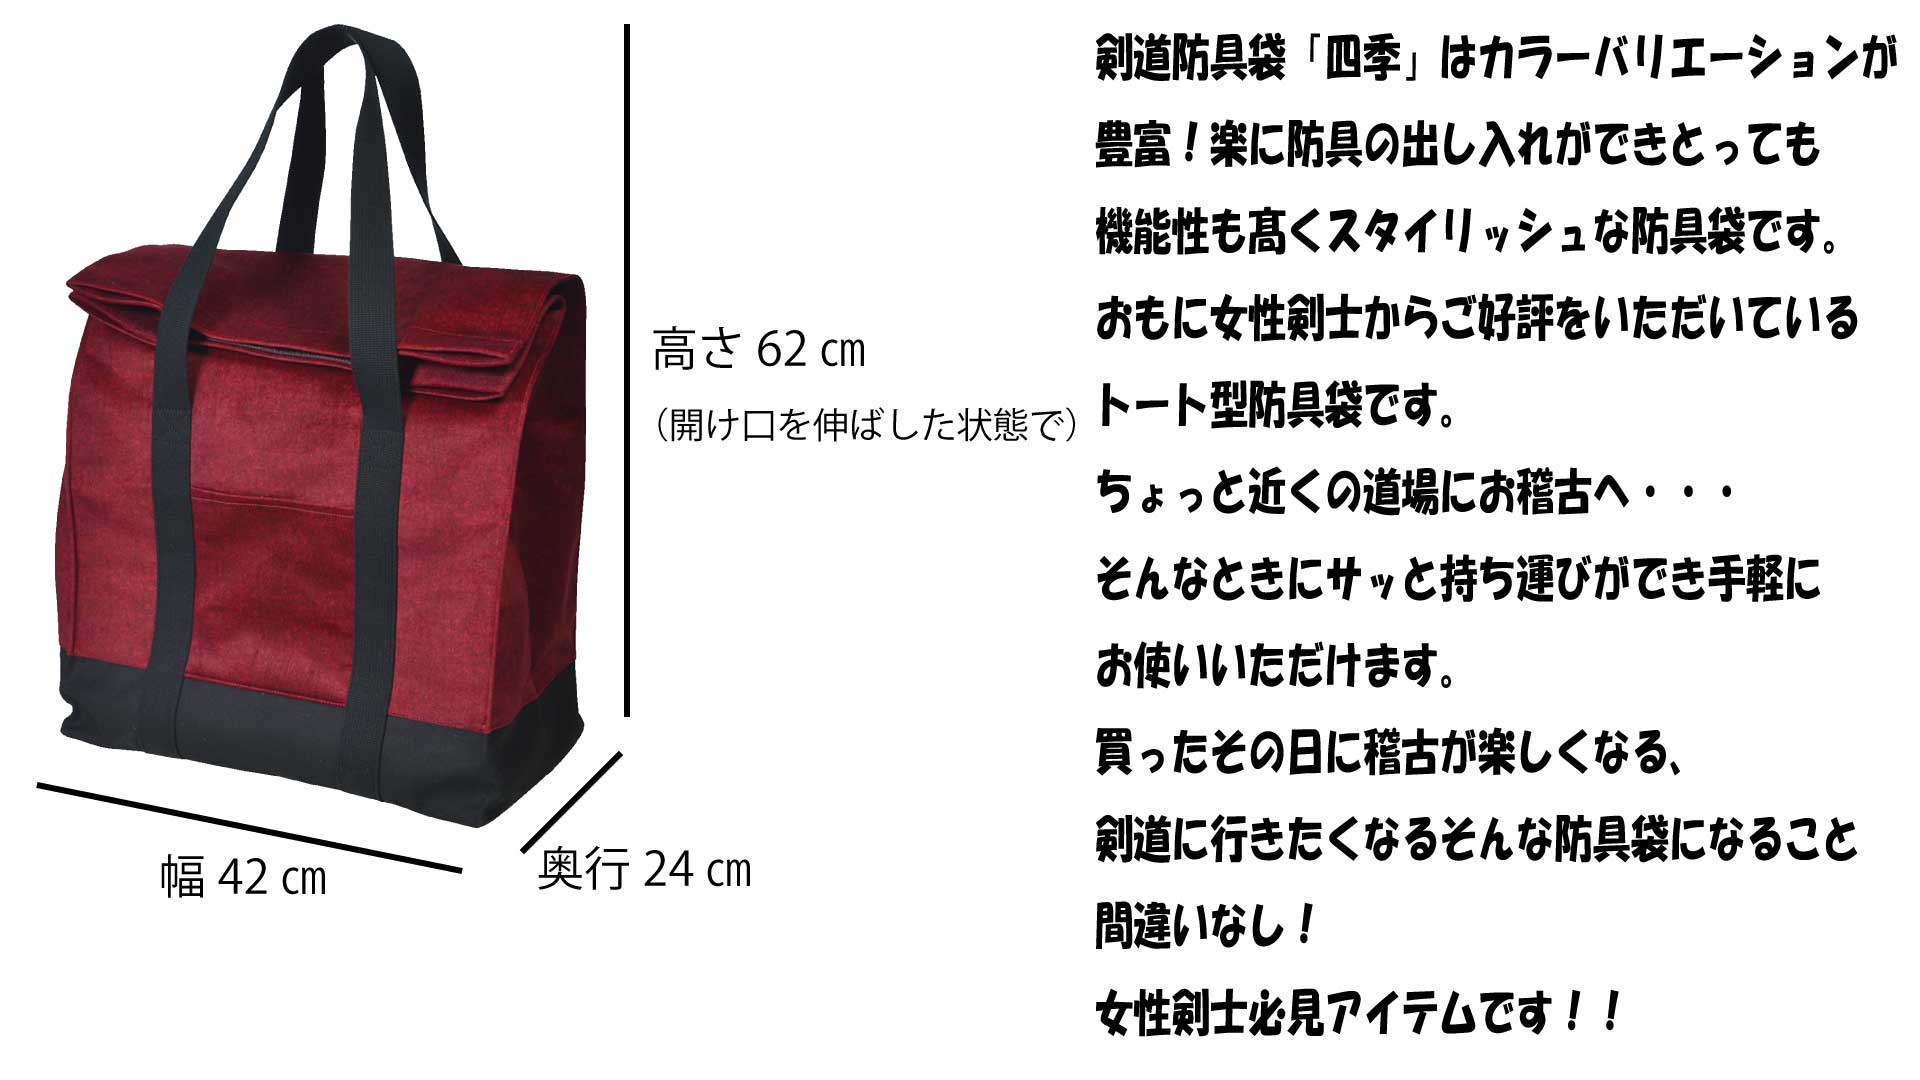 スタイリッシュトート型防具袋「SHIKI」 | 防具袋、竹刀袋,防具袋 